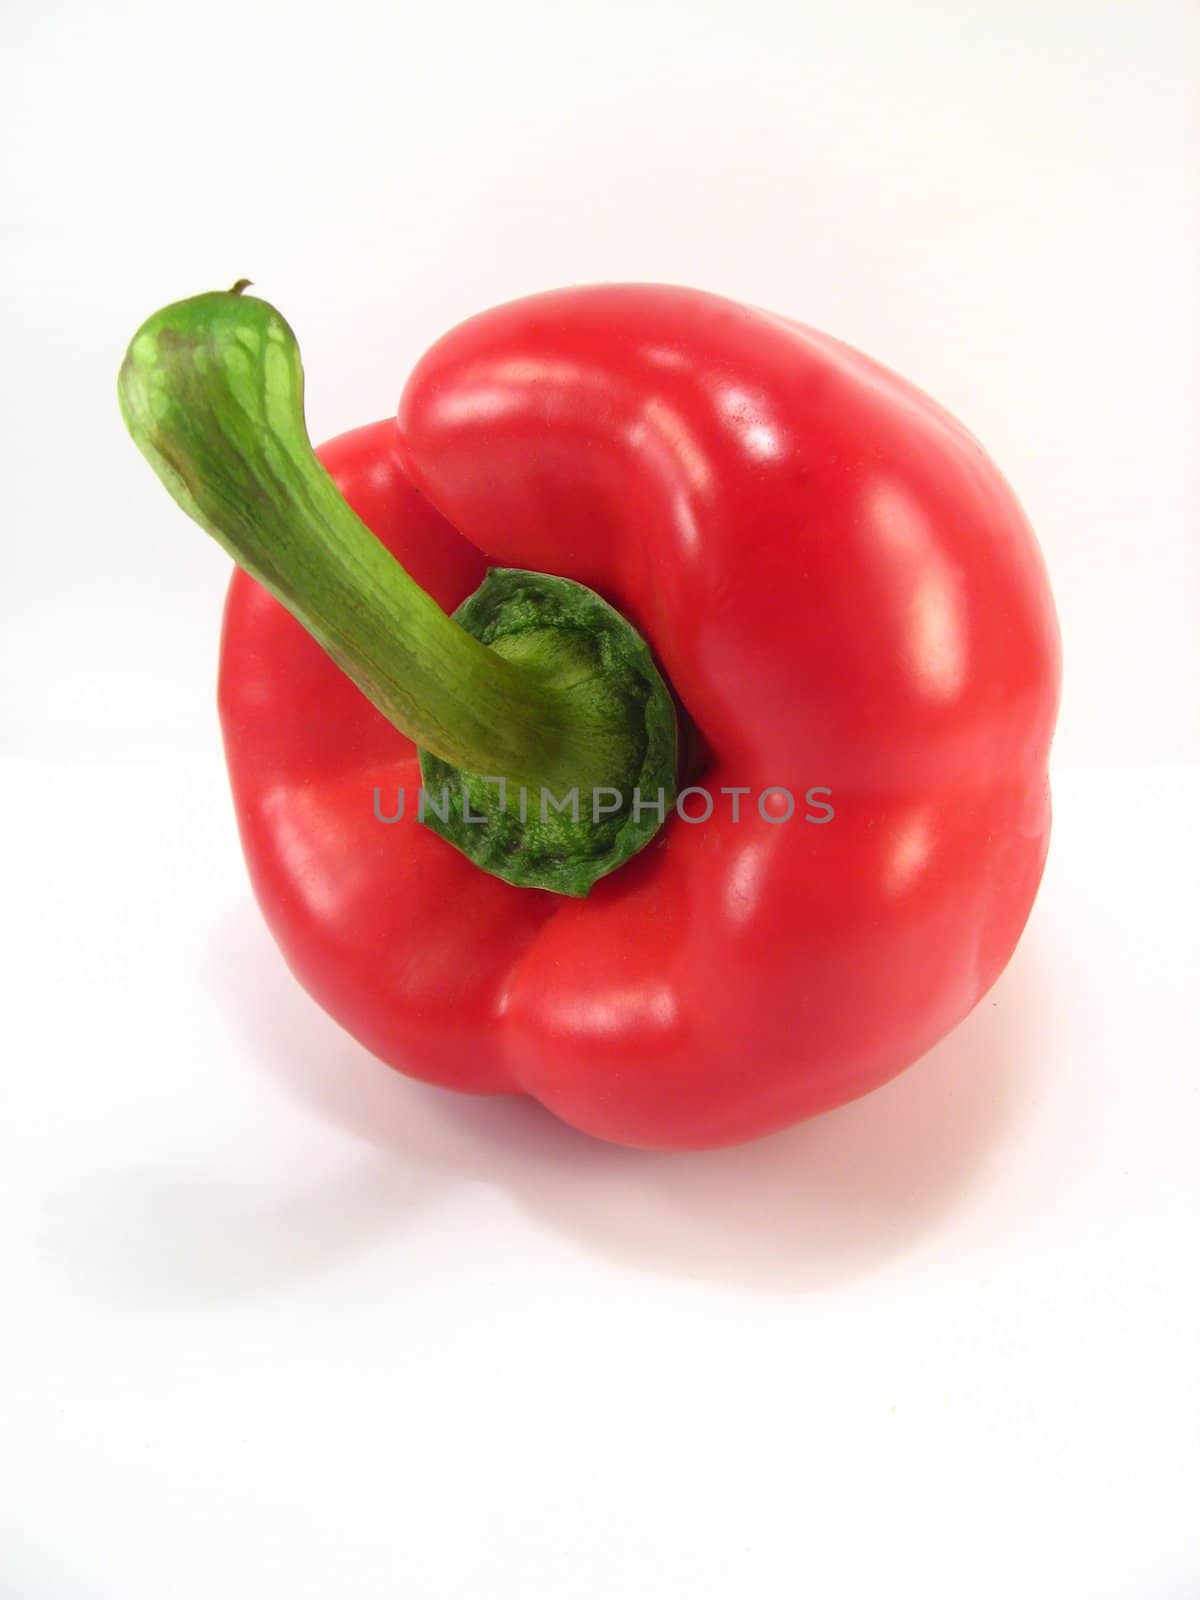 red pepper by jbouzou